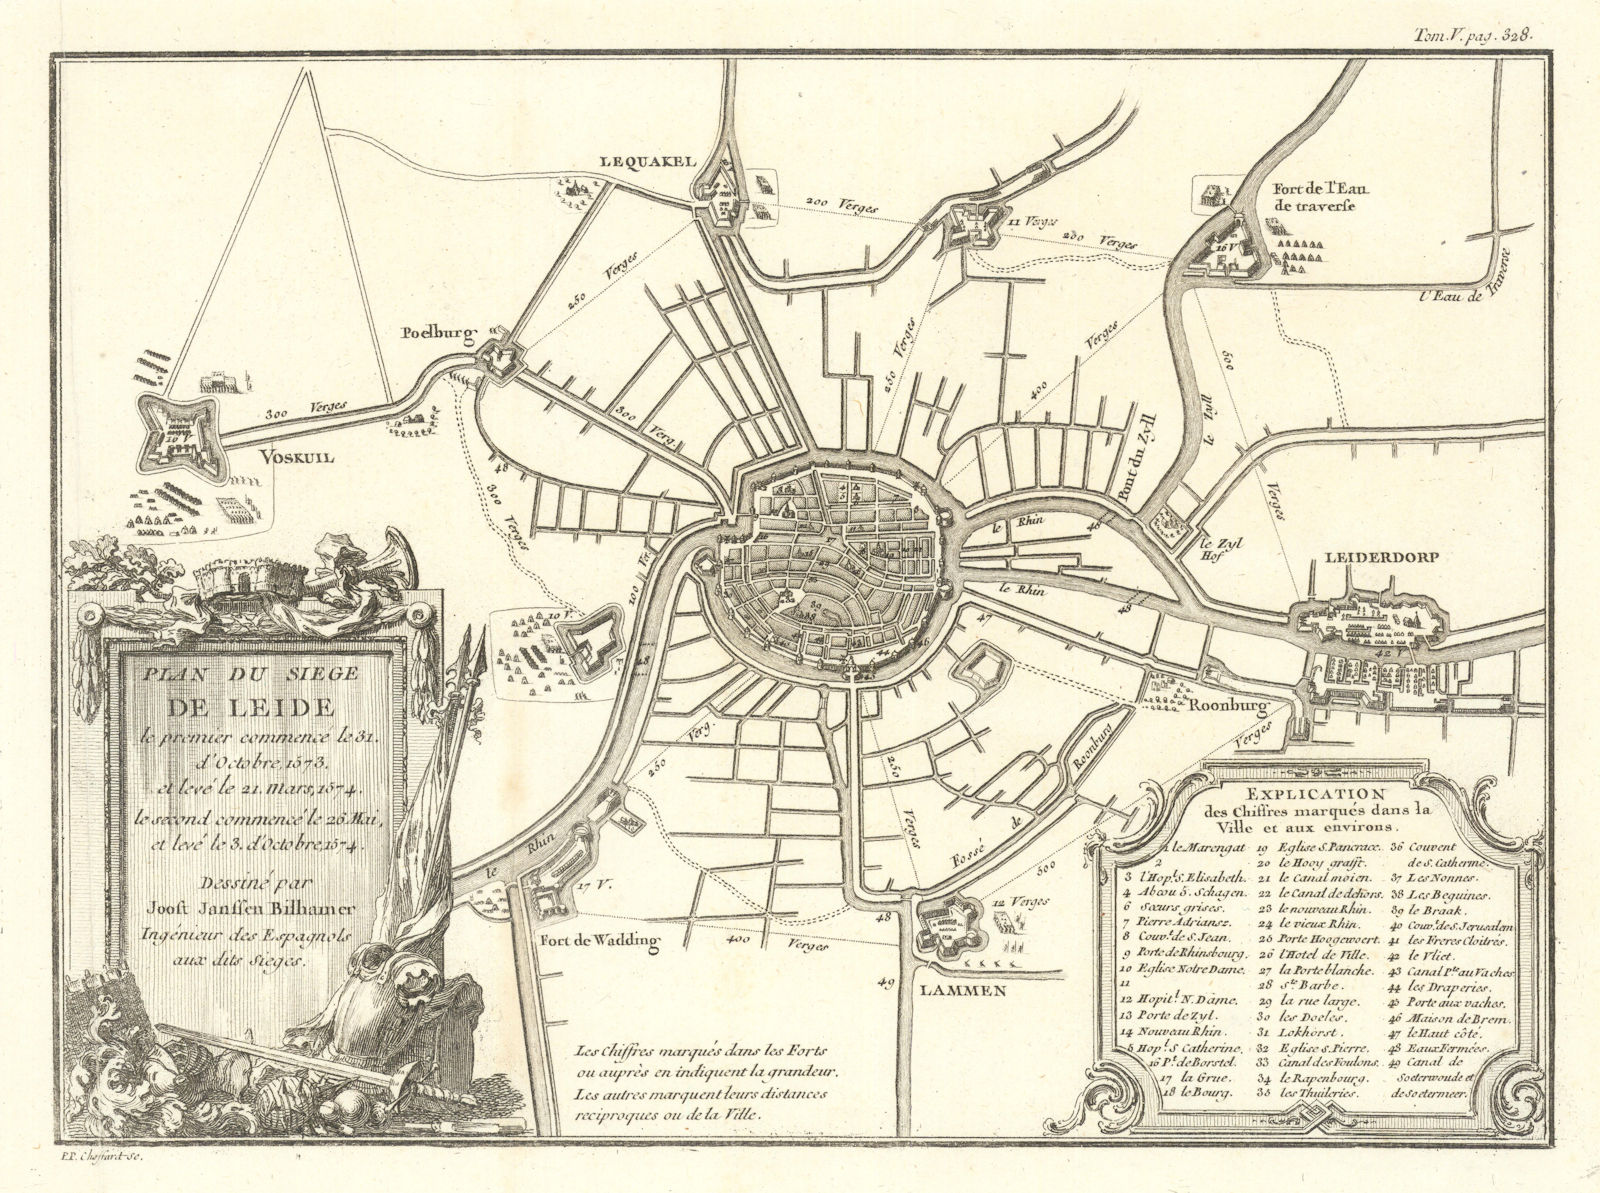 Associate Product Plan du Siege de Leide (Leiden, 1573-1574) by Choffard after Bilhamer c1760 map